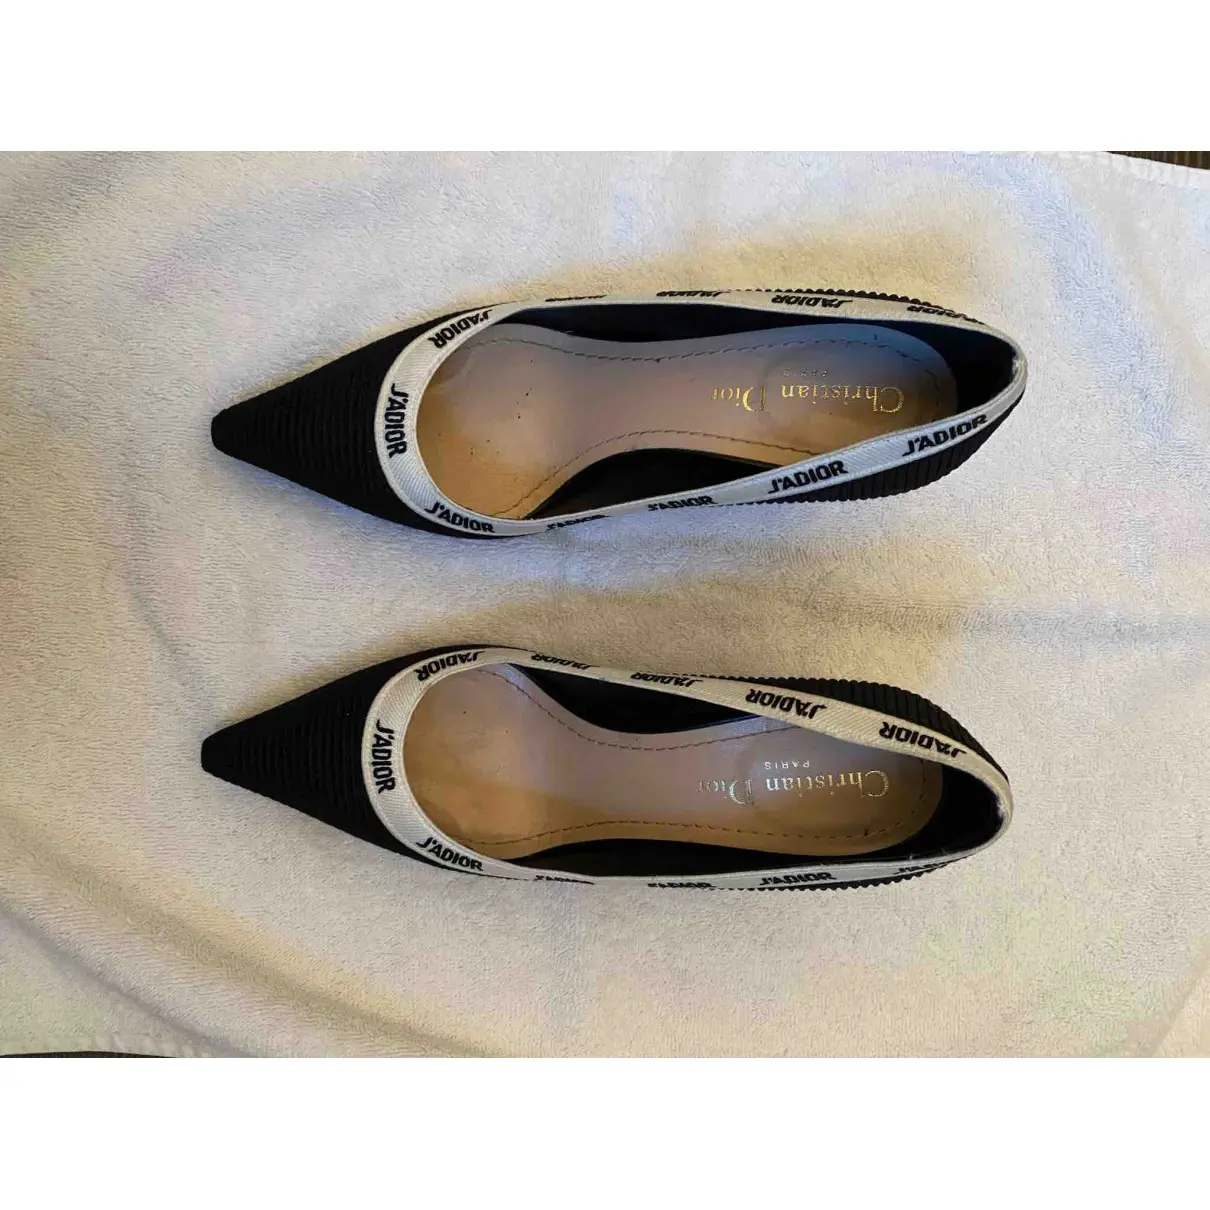 Buy Dior J'Adior cloth heels online